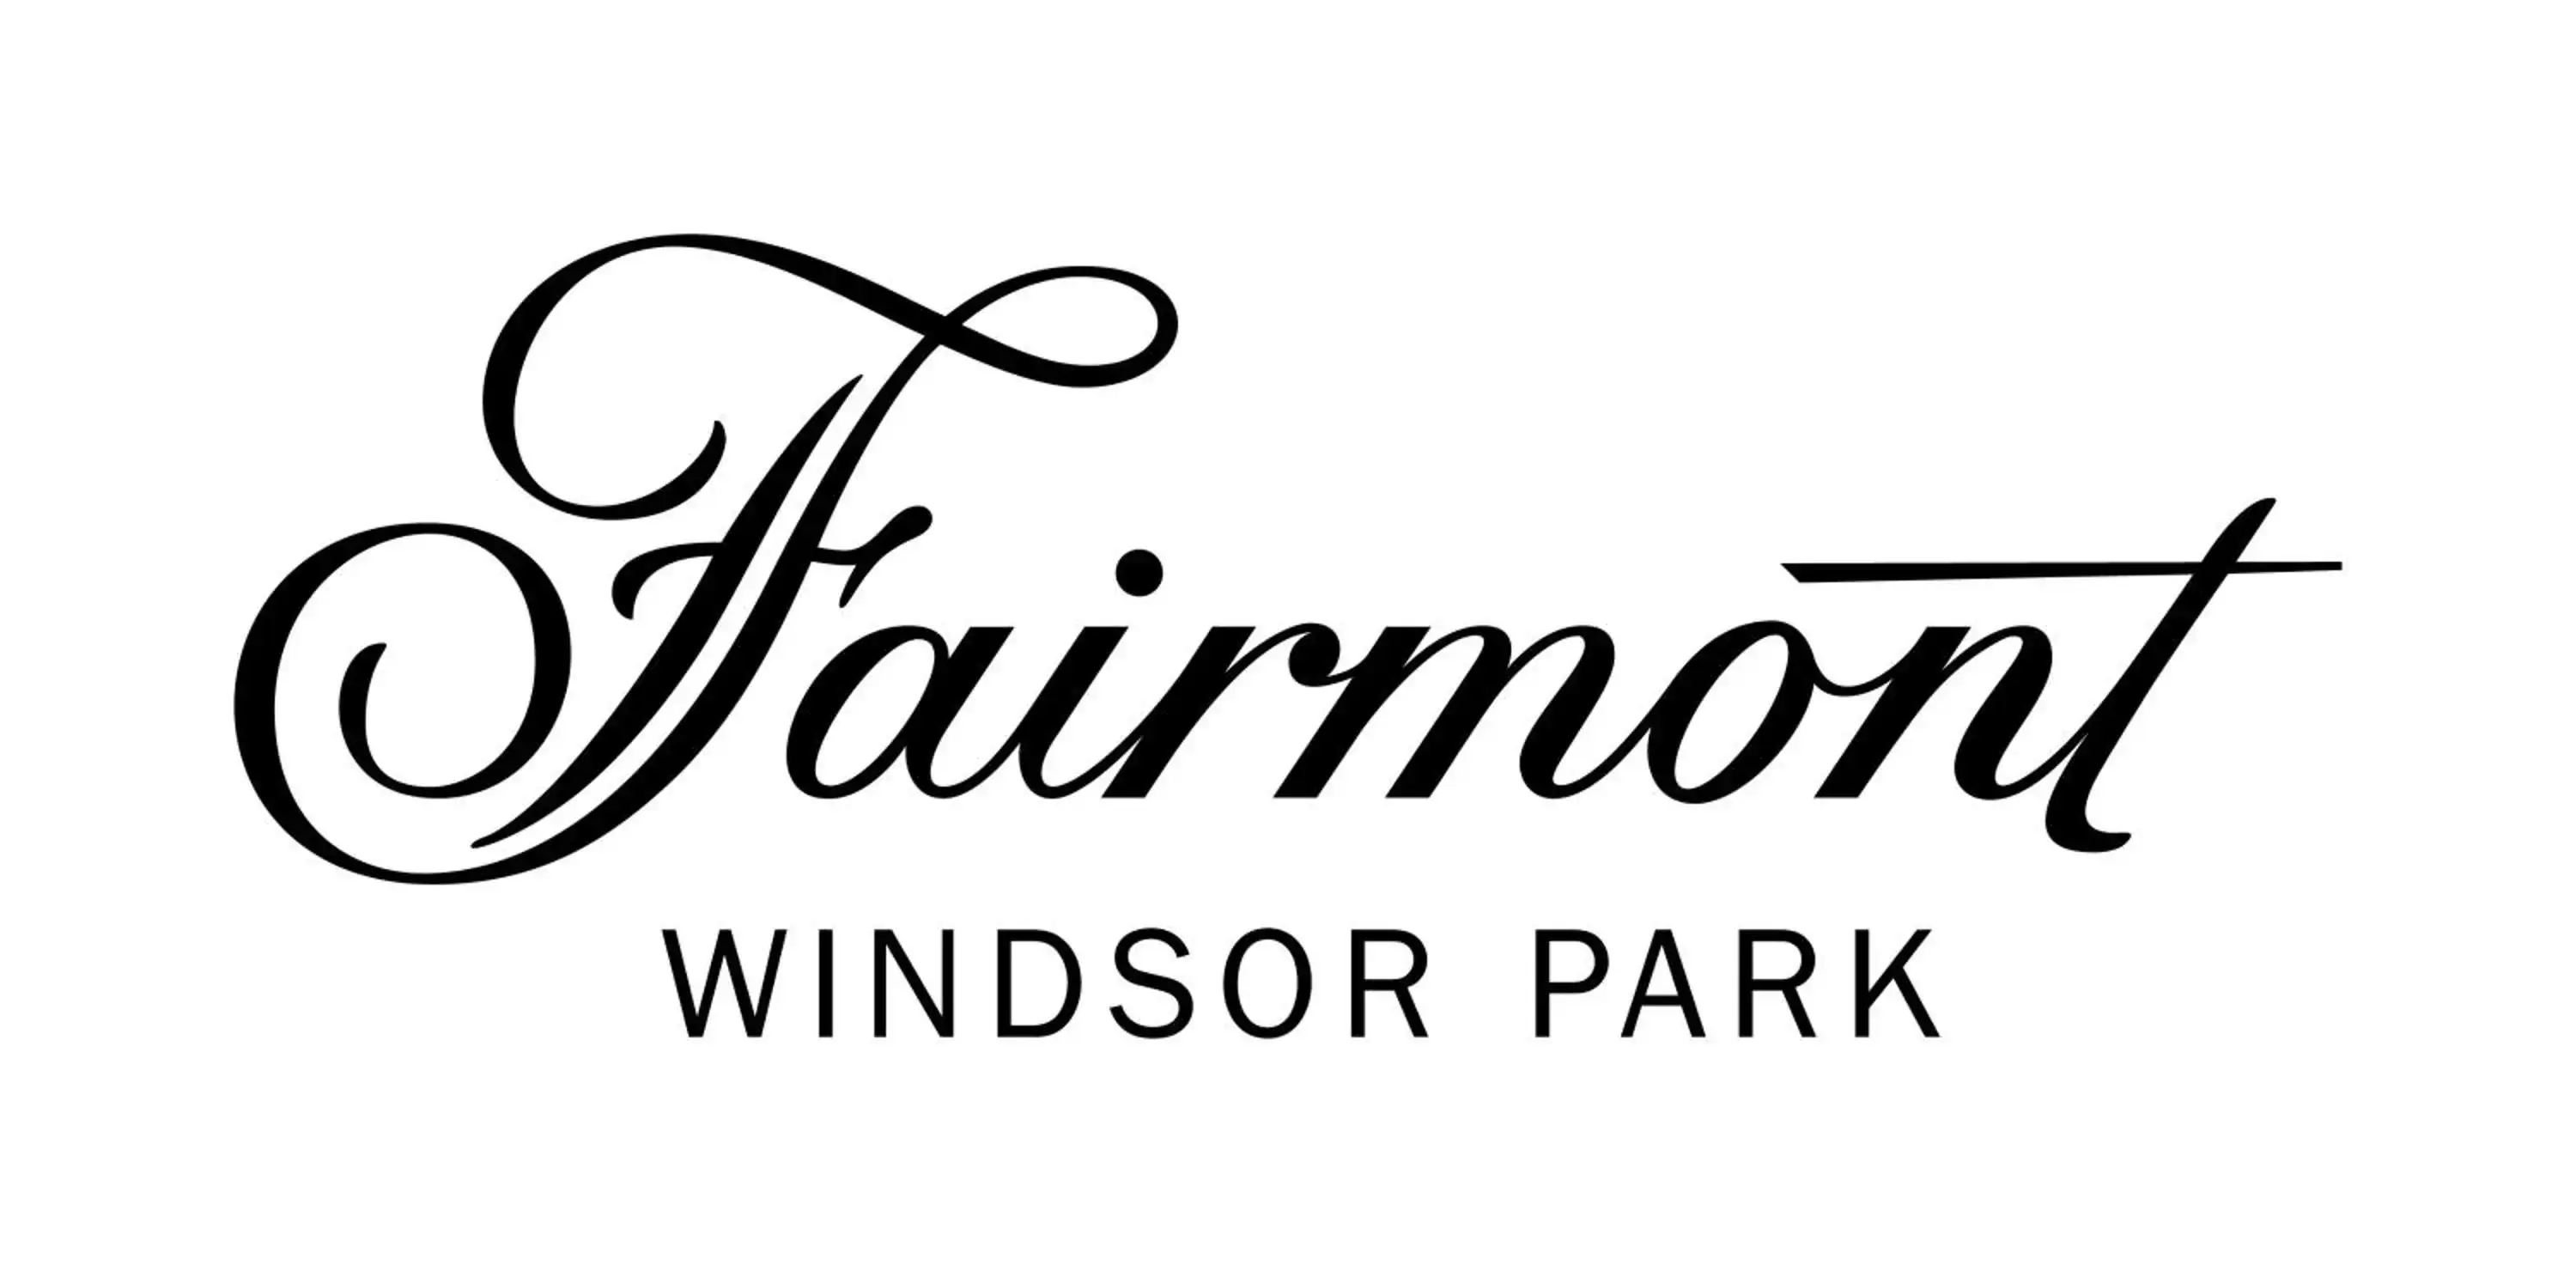 Property logo or sign, Property Logo/Sign in Fairmont Windsor Park